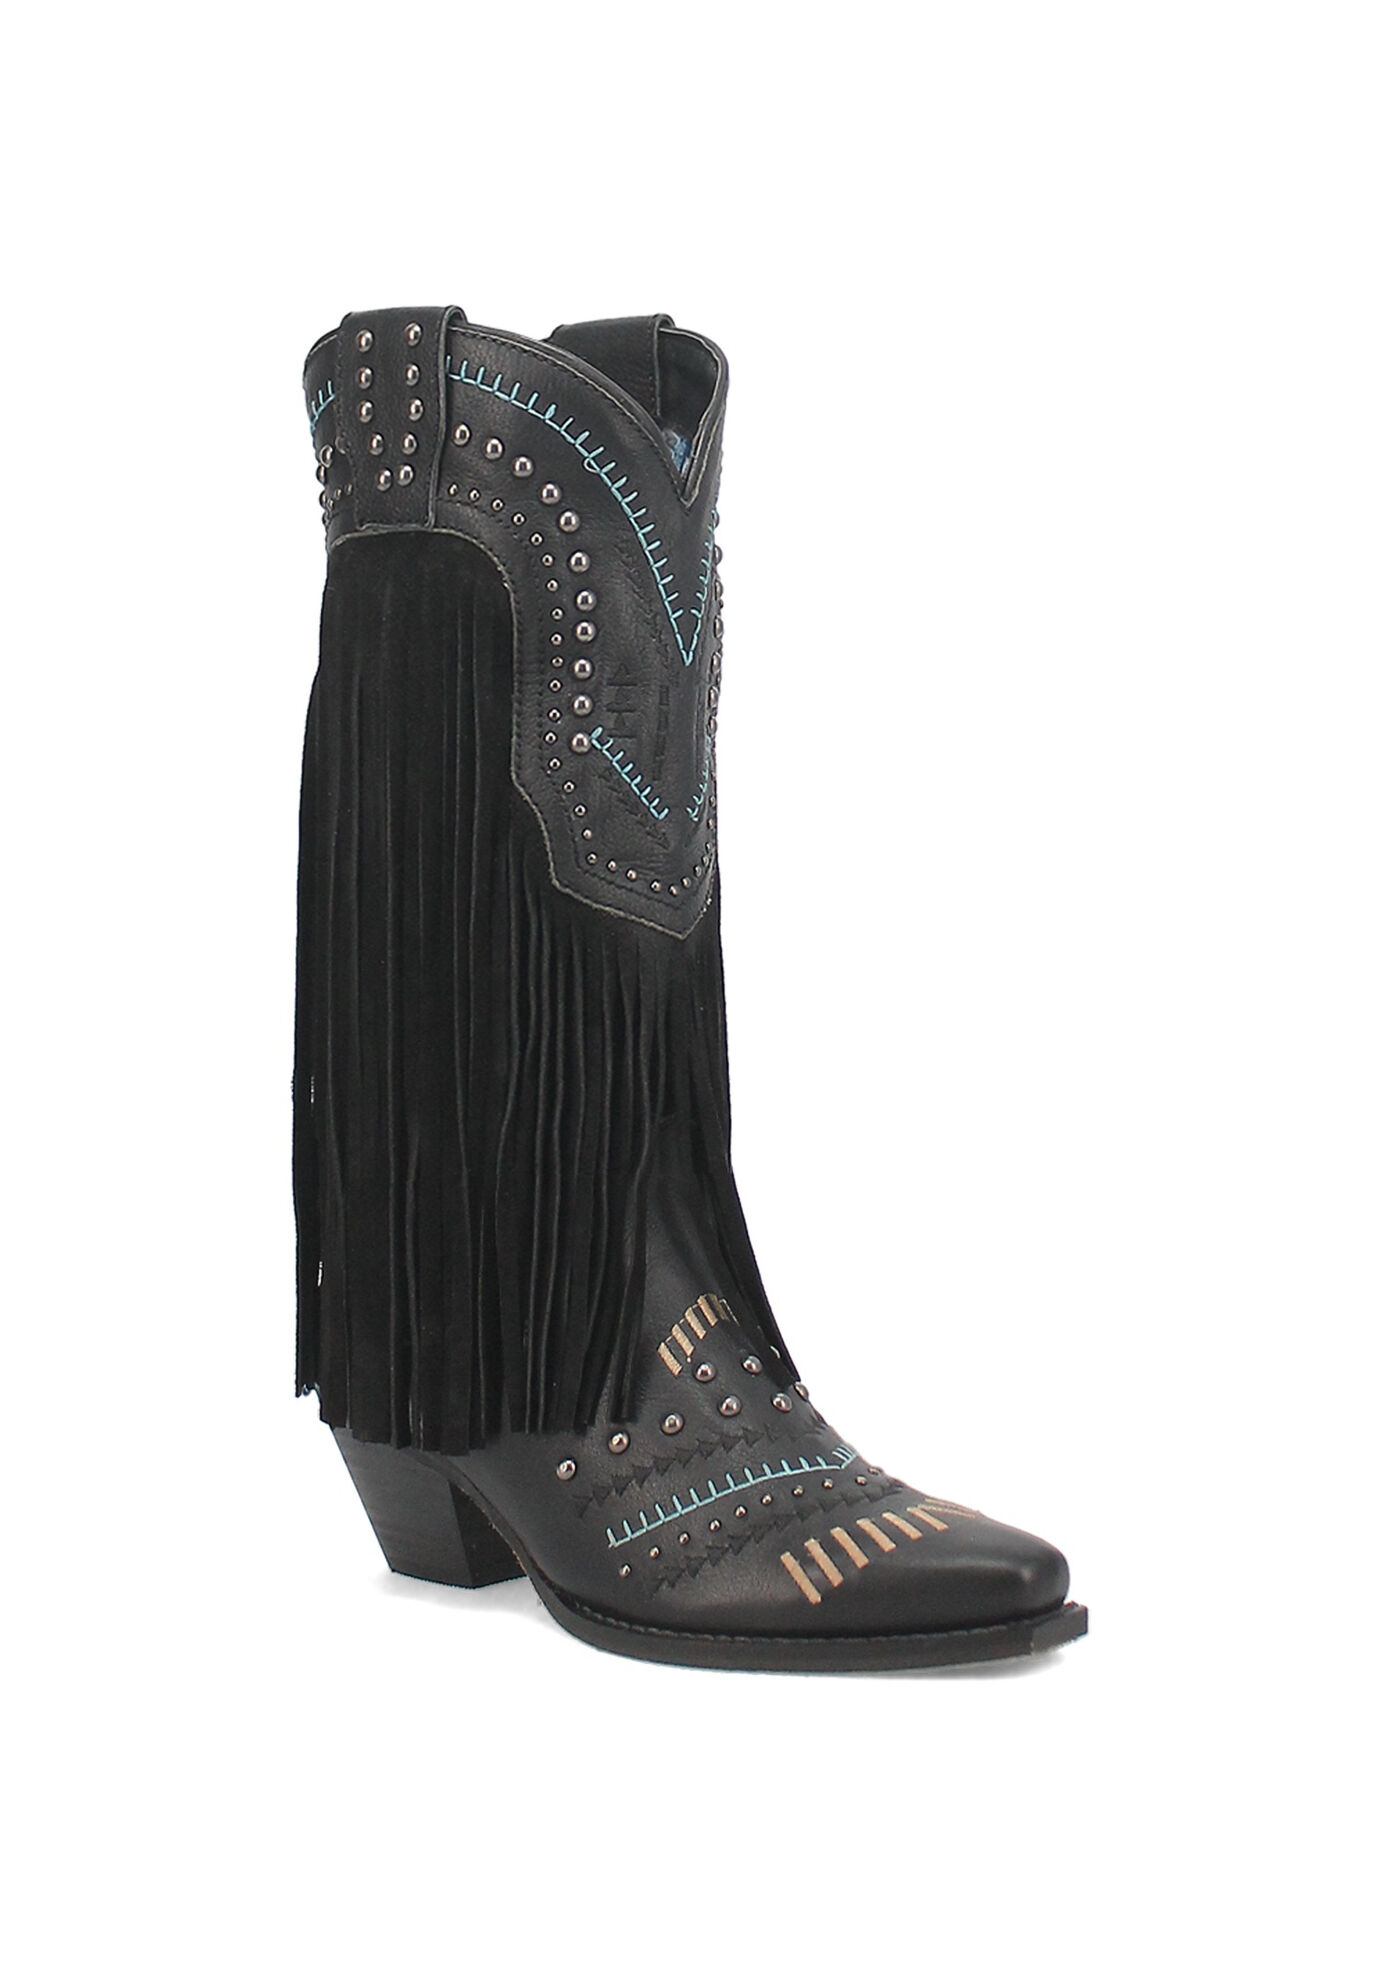 Women's Gypsy Western Fringe Boot by Dingo in Black (Size 8 1/2 M)